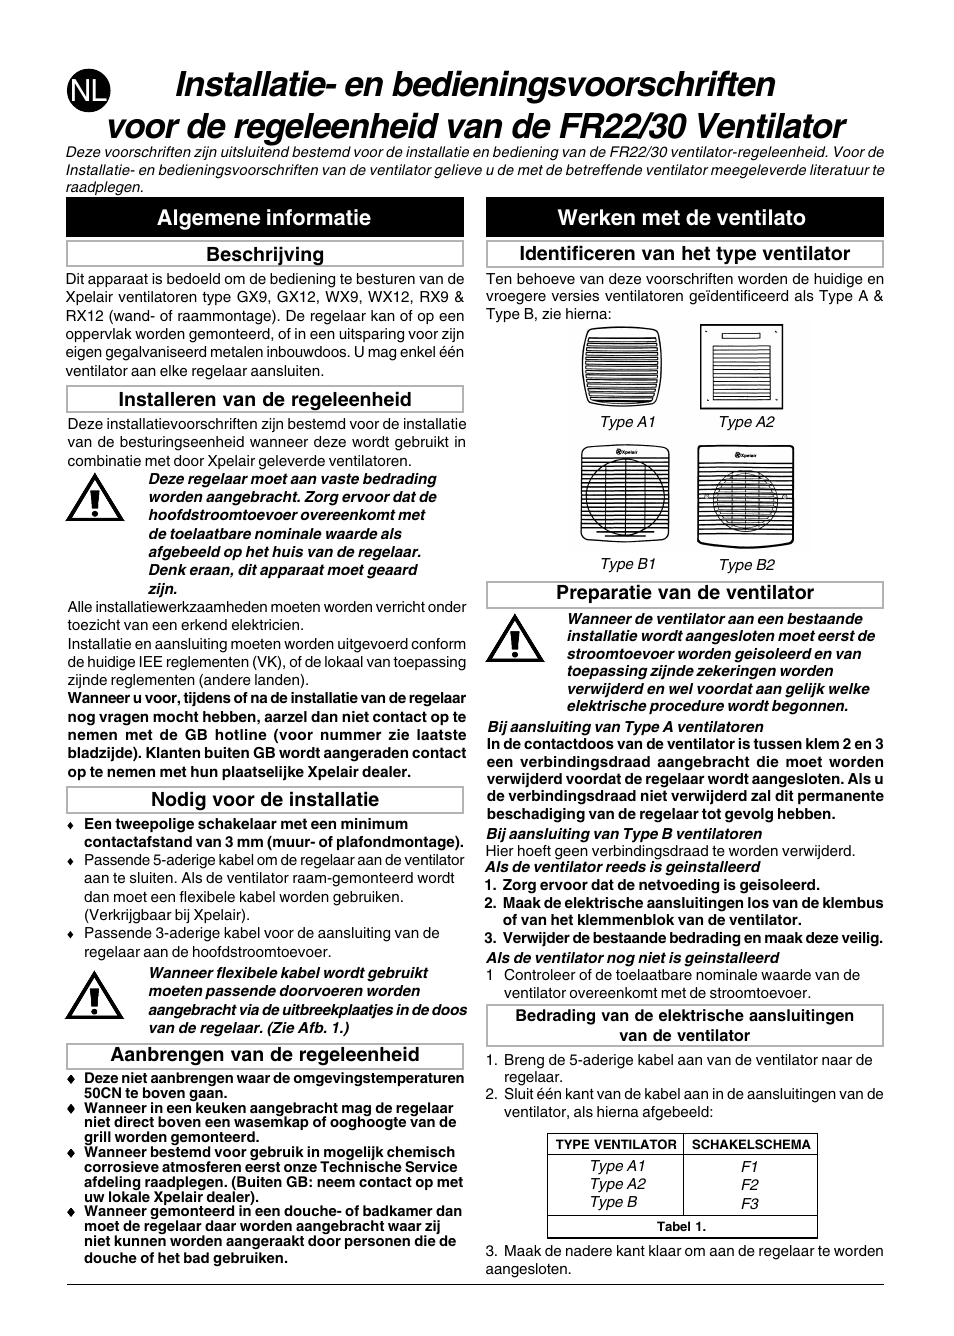 Algemene informatie, Werken met de ventilato | Xpelair FR22-30 User Manual | Page 6 / 20